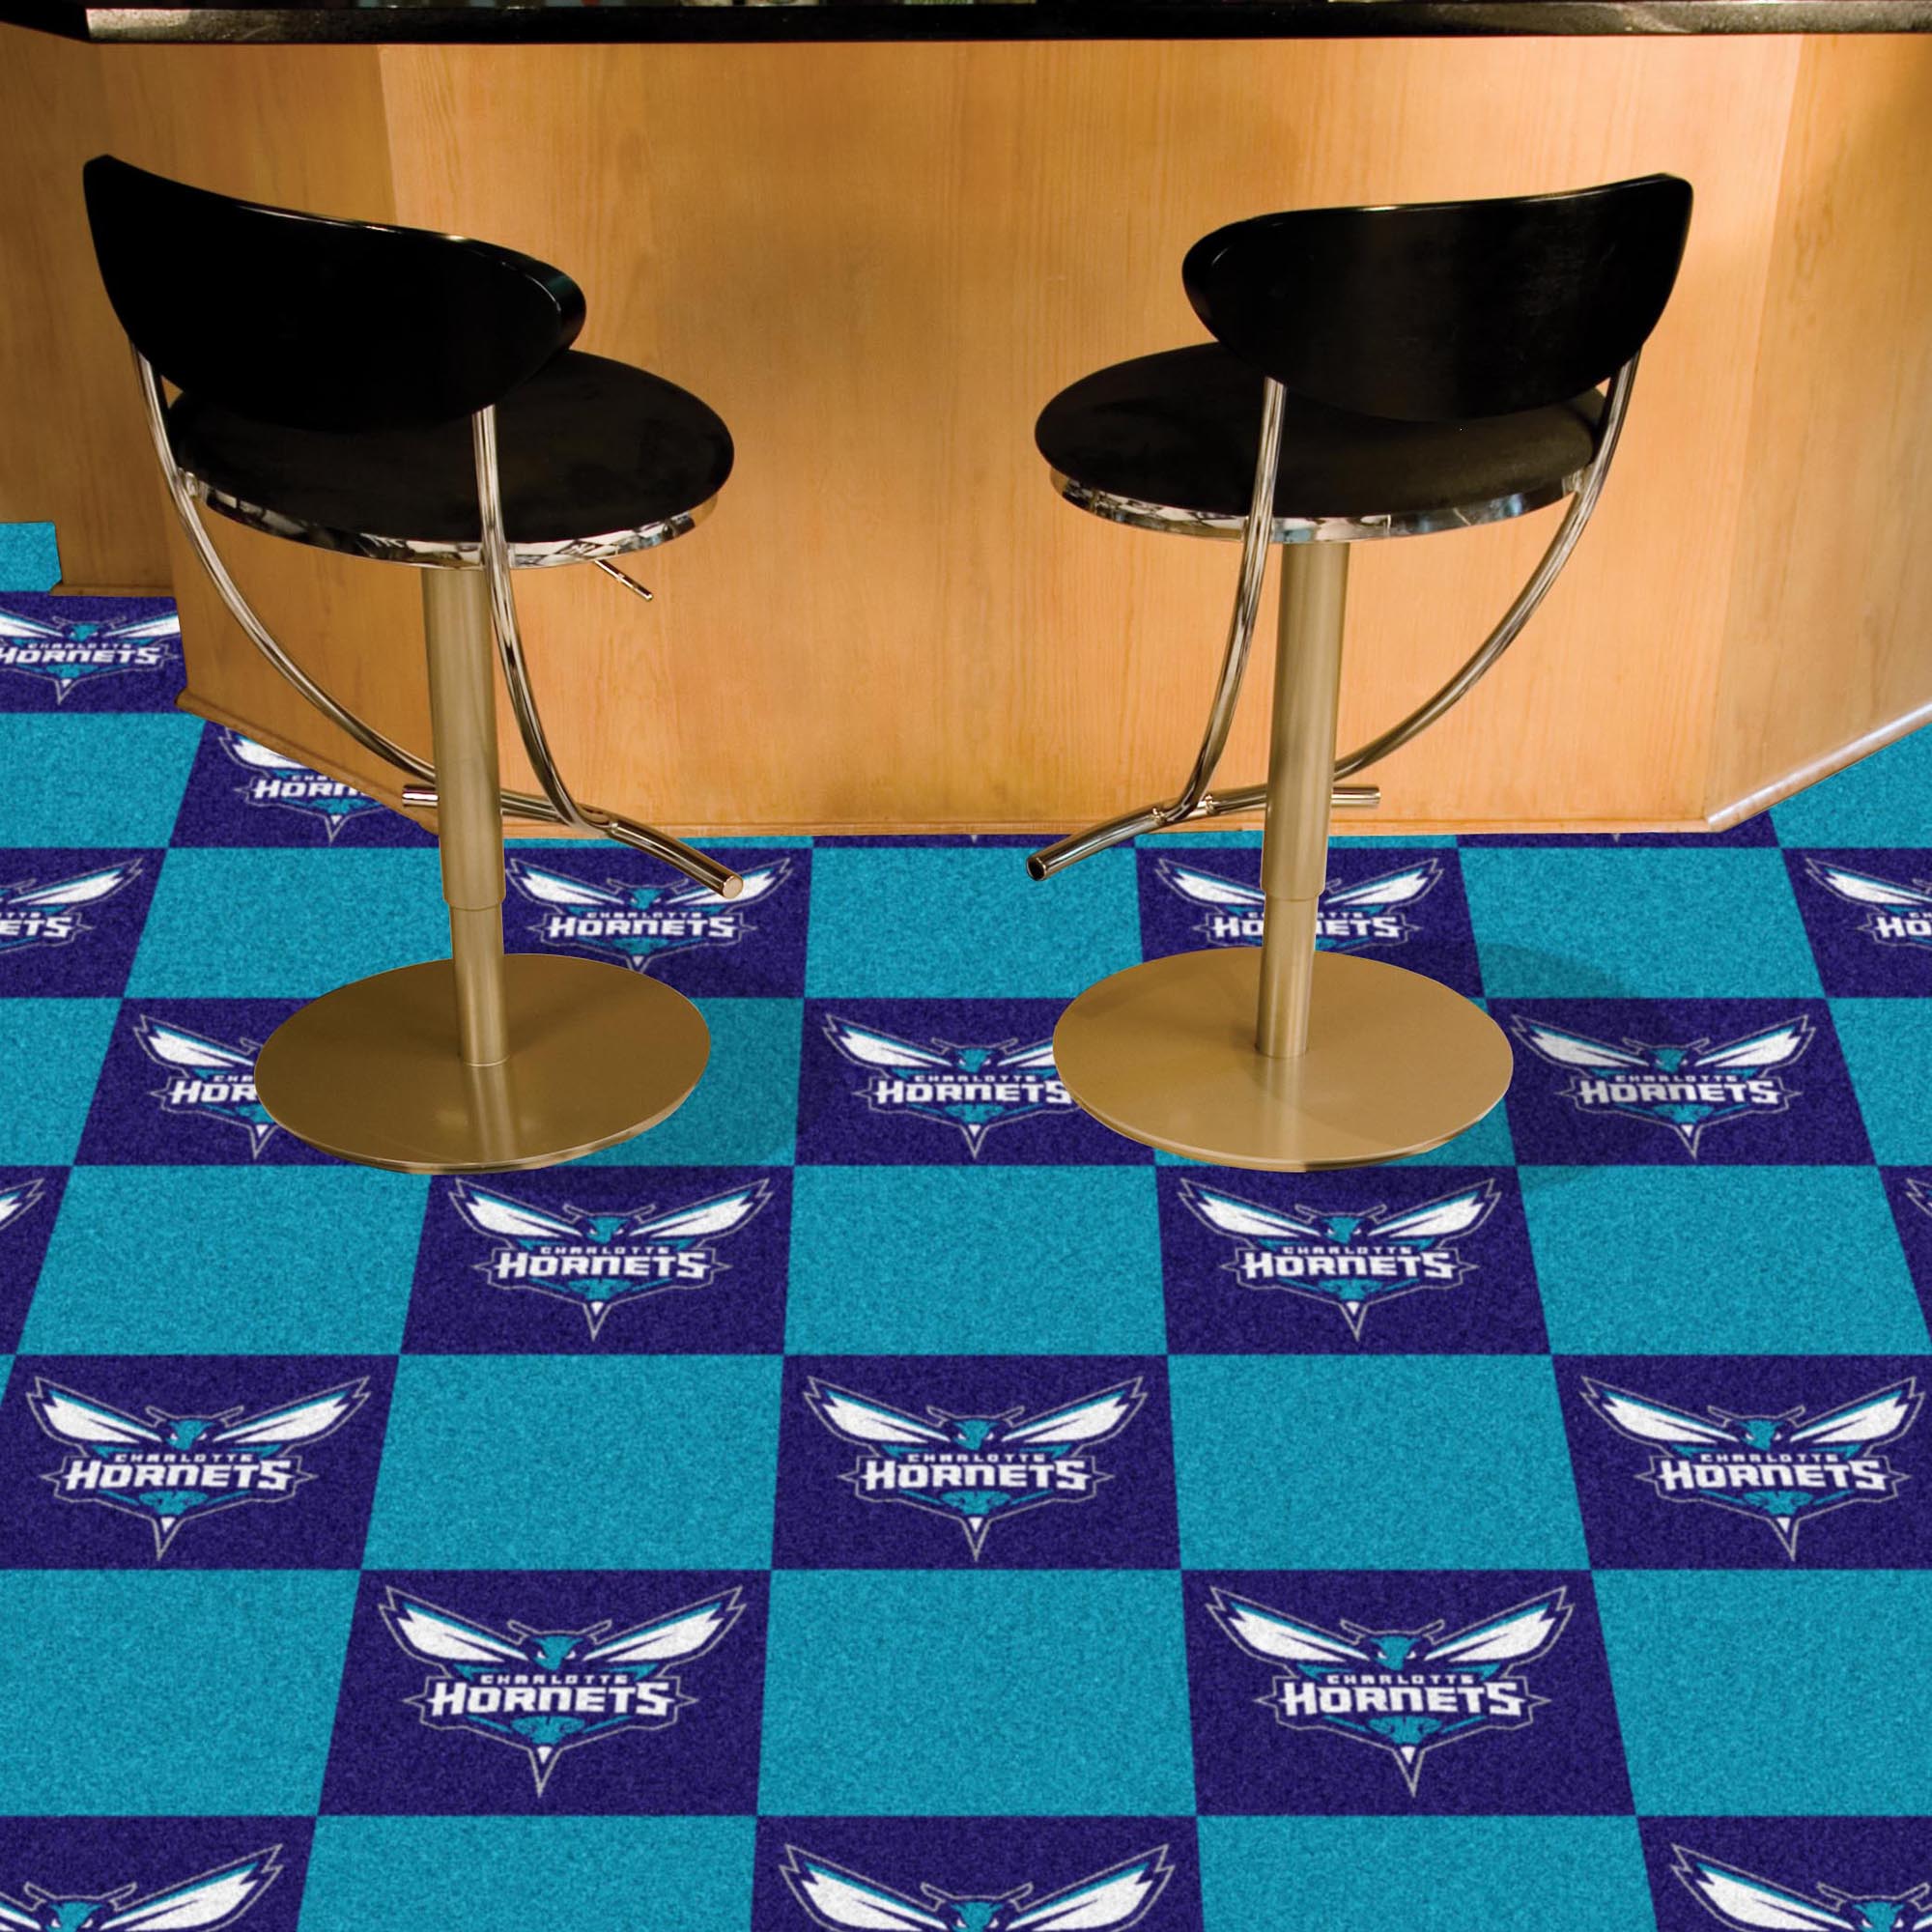 Charlotte Hornets Carpet Tiles 18x18 in.